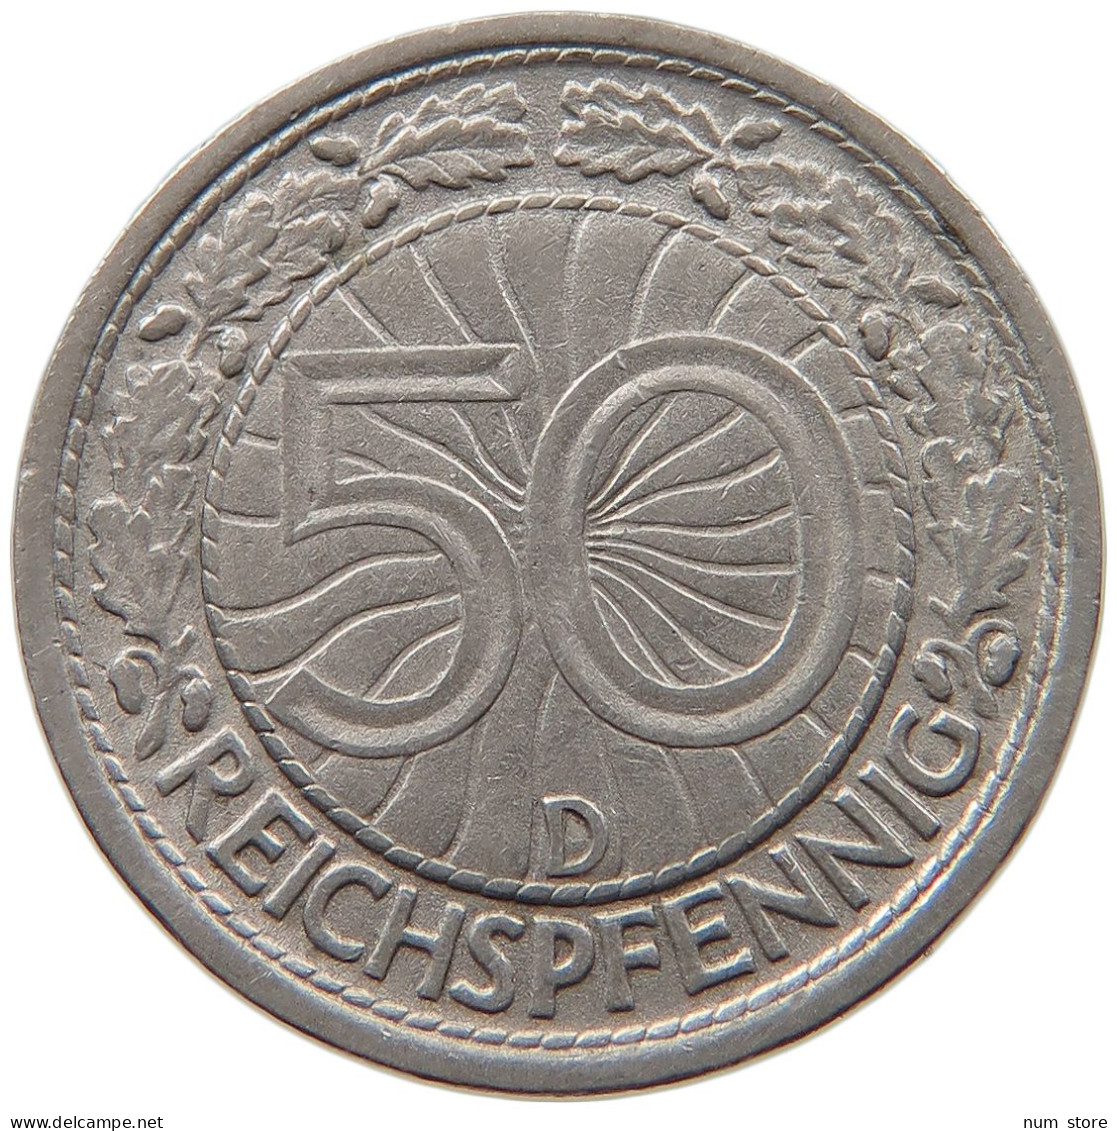 DRITTES REICH 50 REICHSPFENNIG 1935 D  #MA 099488 - 50 Reichspfennig